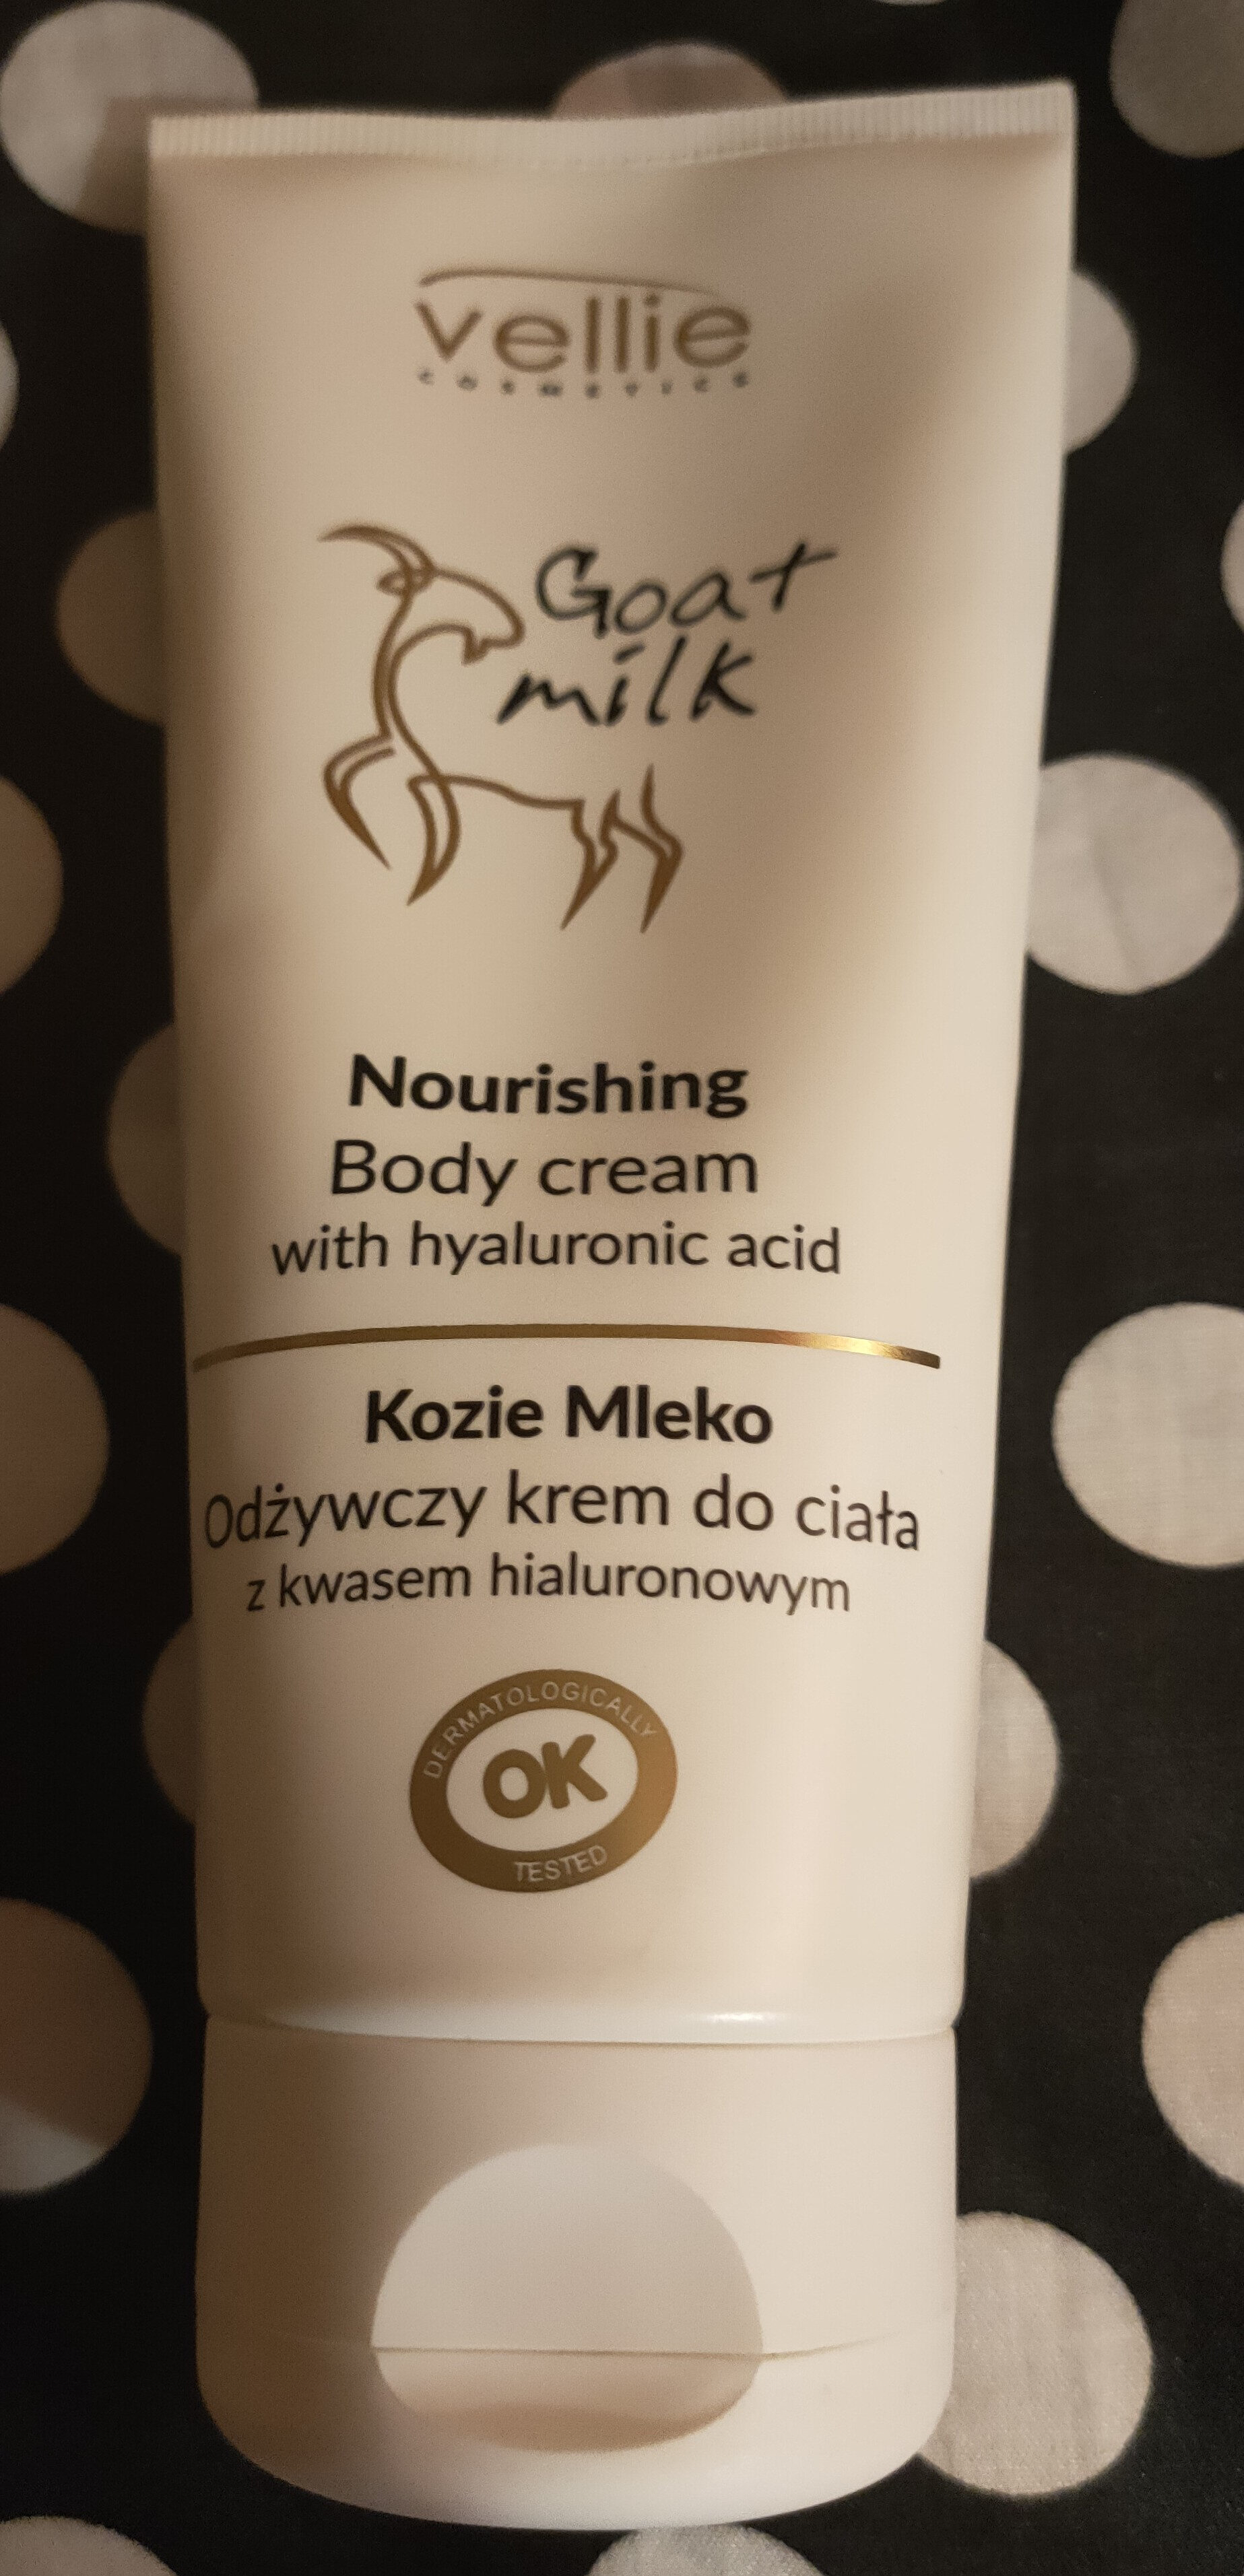 Goat Milk Nourishing Body Cream - Produto - en